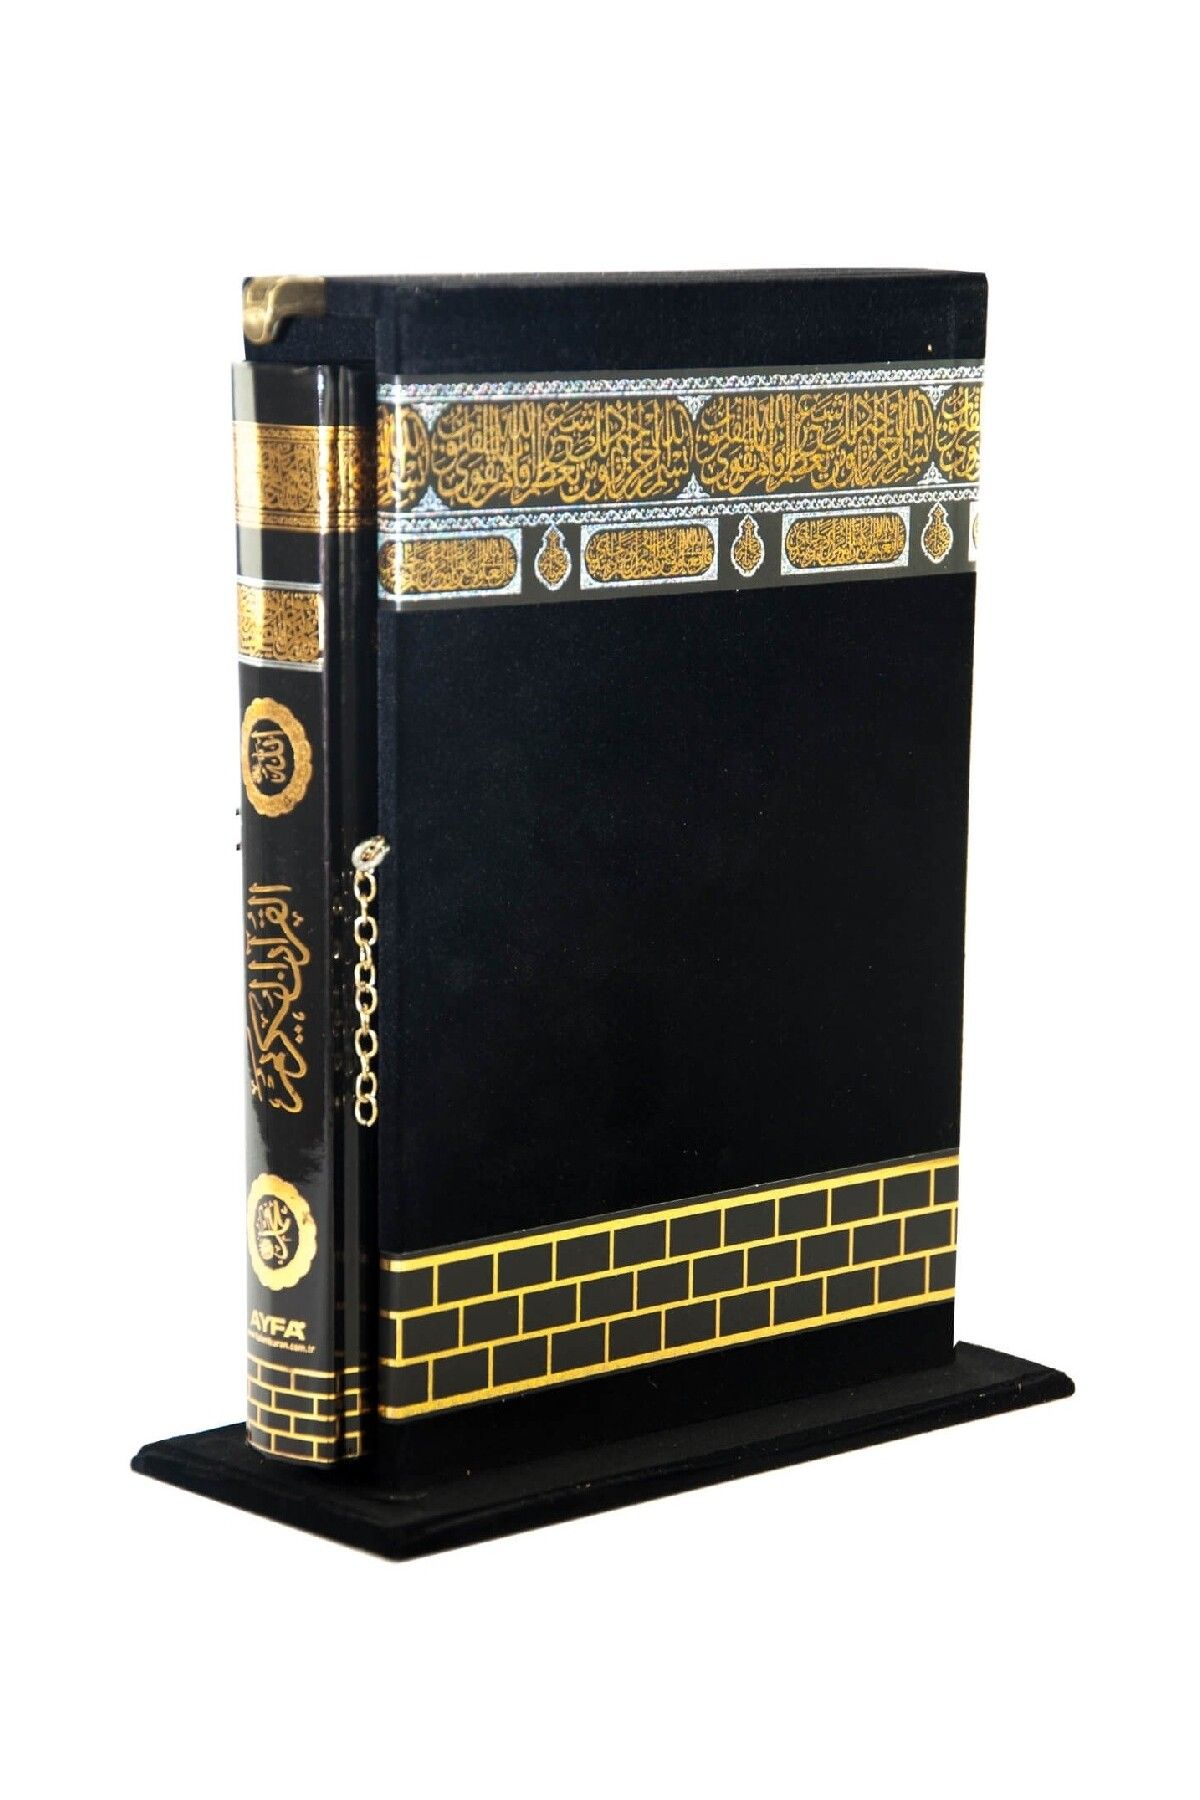 Ayfa Press Publishing Коран с рисунком Каабы — в коробке — простой арабский язык — средний размер — Ayfa Publications 457317